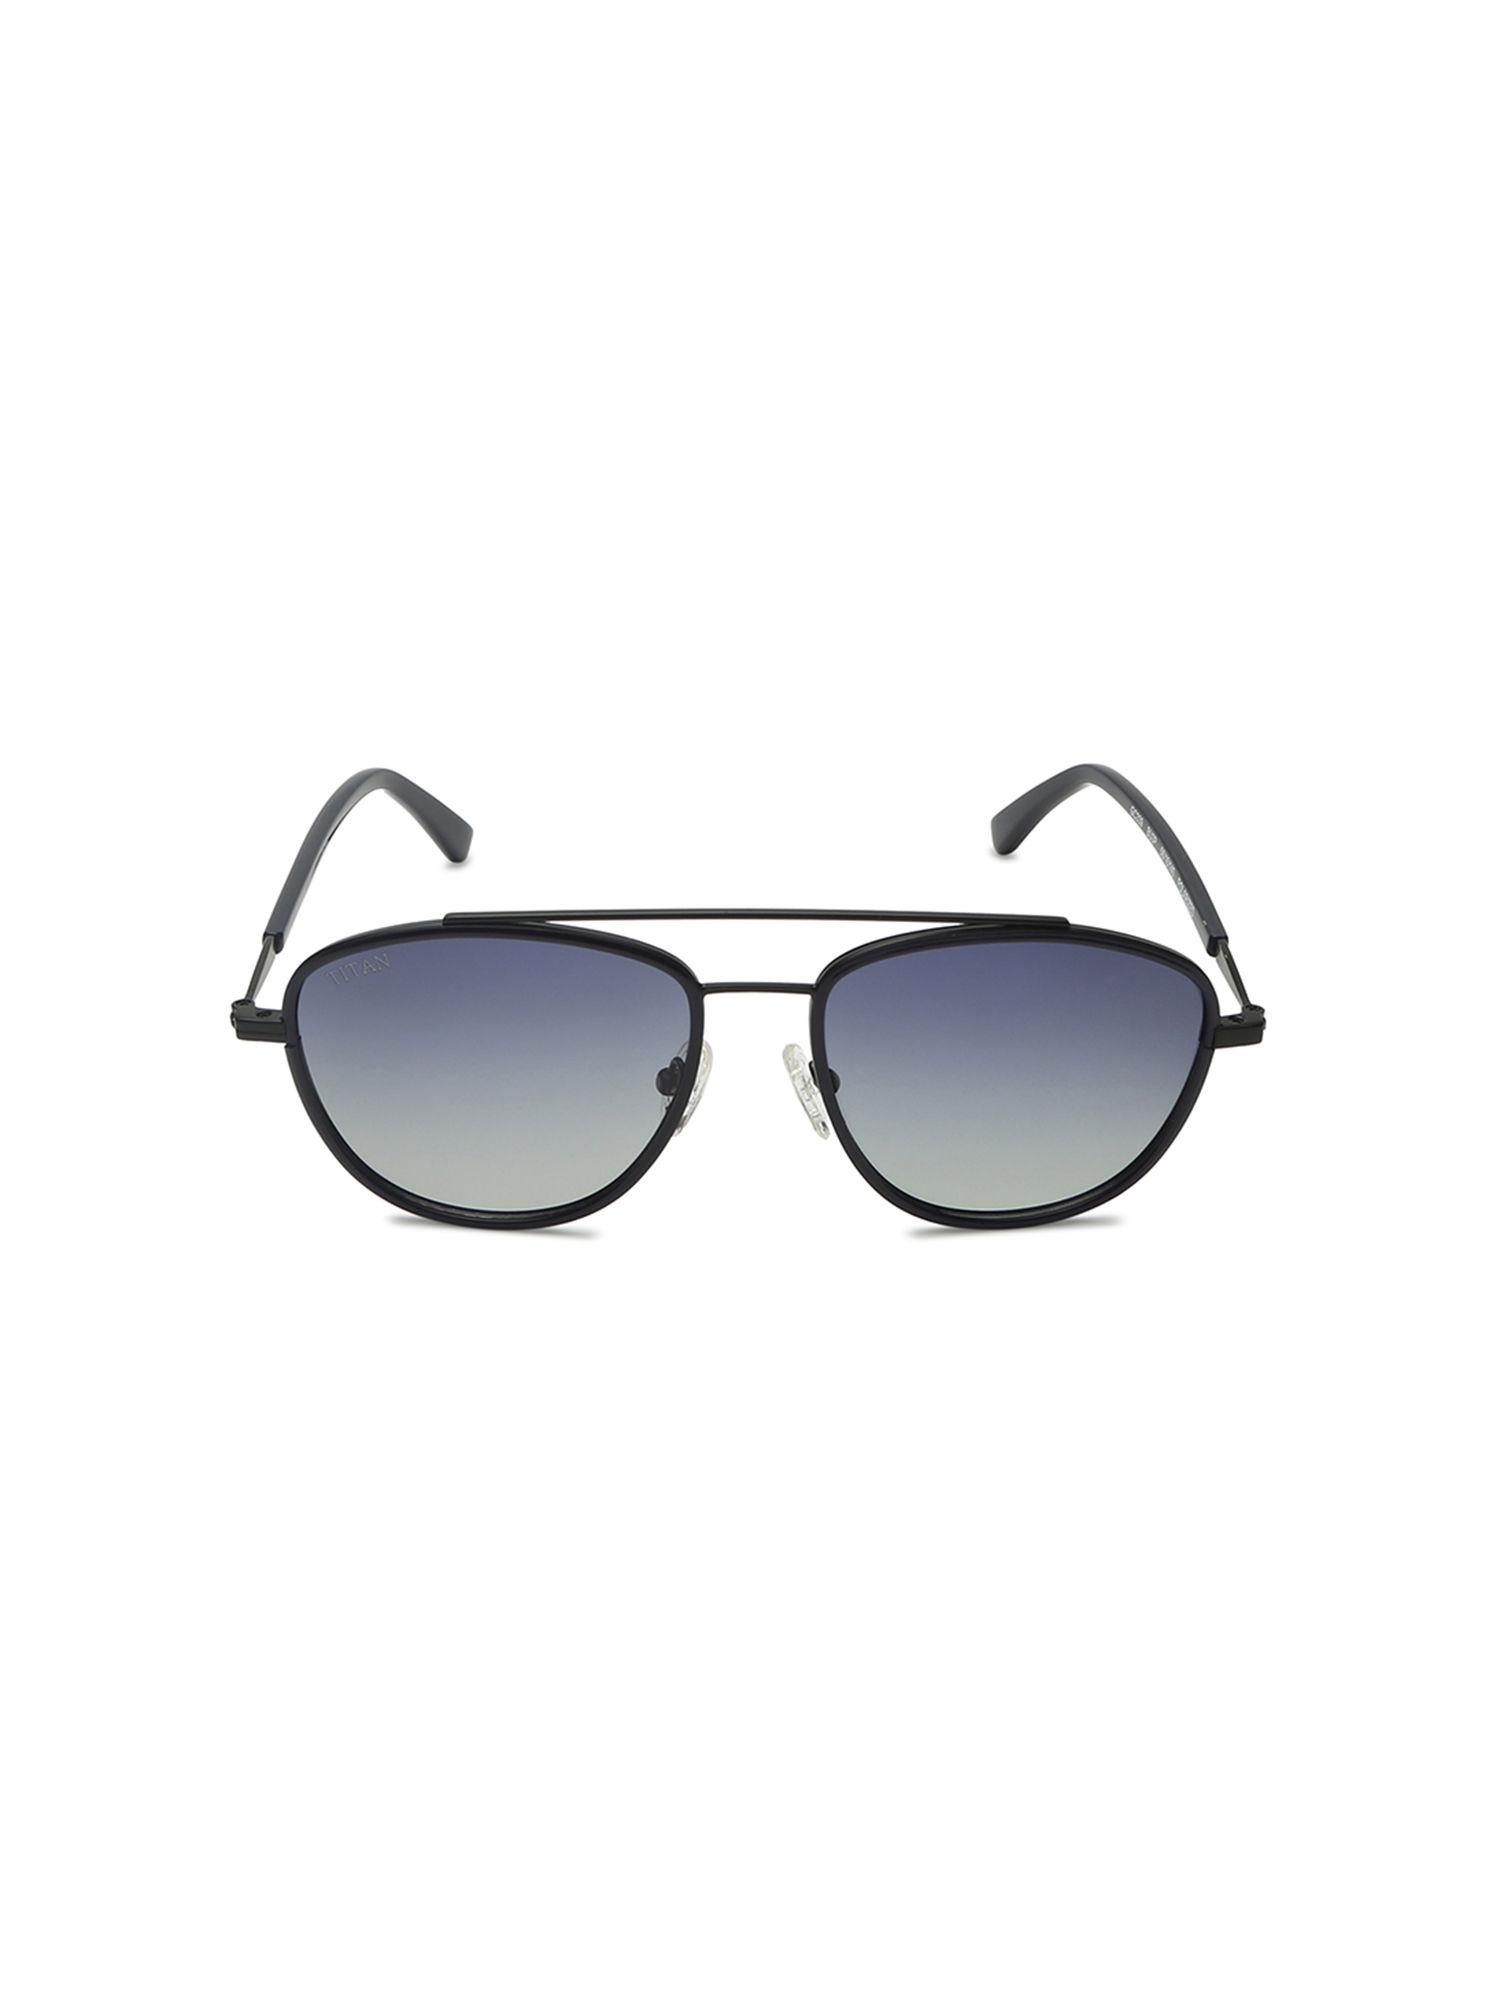 black rectangle sunglasses (gc339bu3pv)